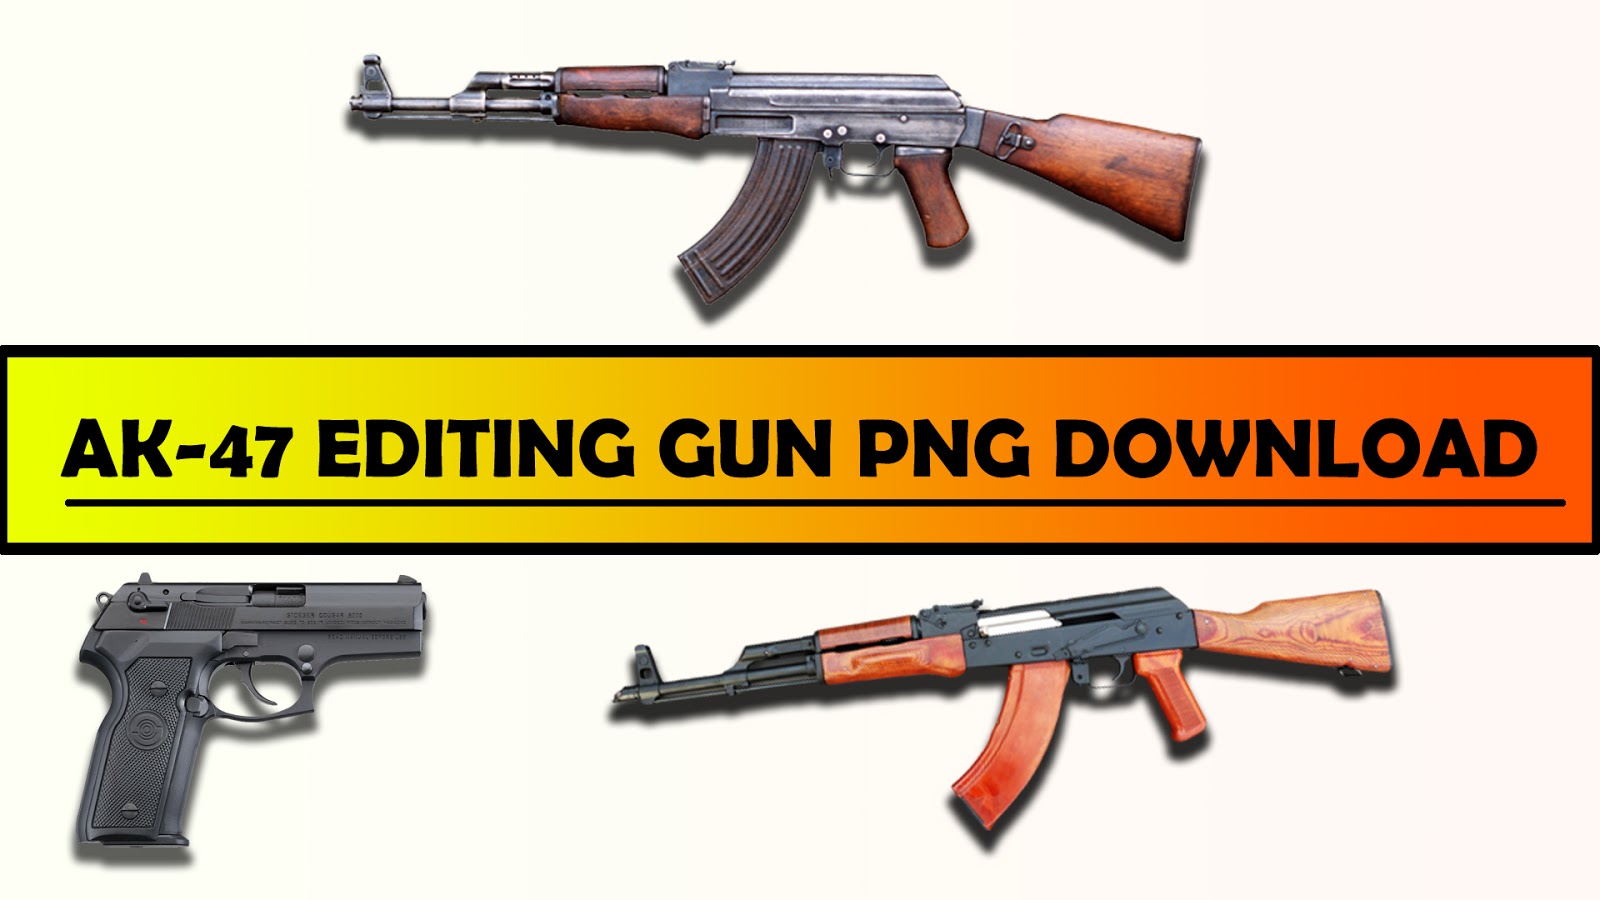 Pubg All Guns Png | Download Hack Pubg Mobile Pc 2019 - 